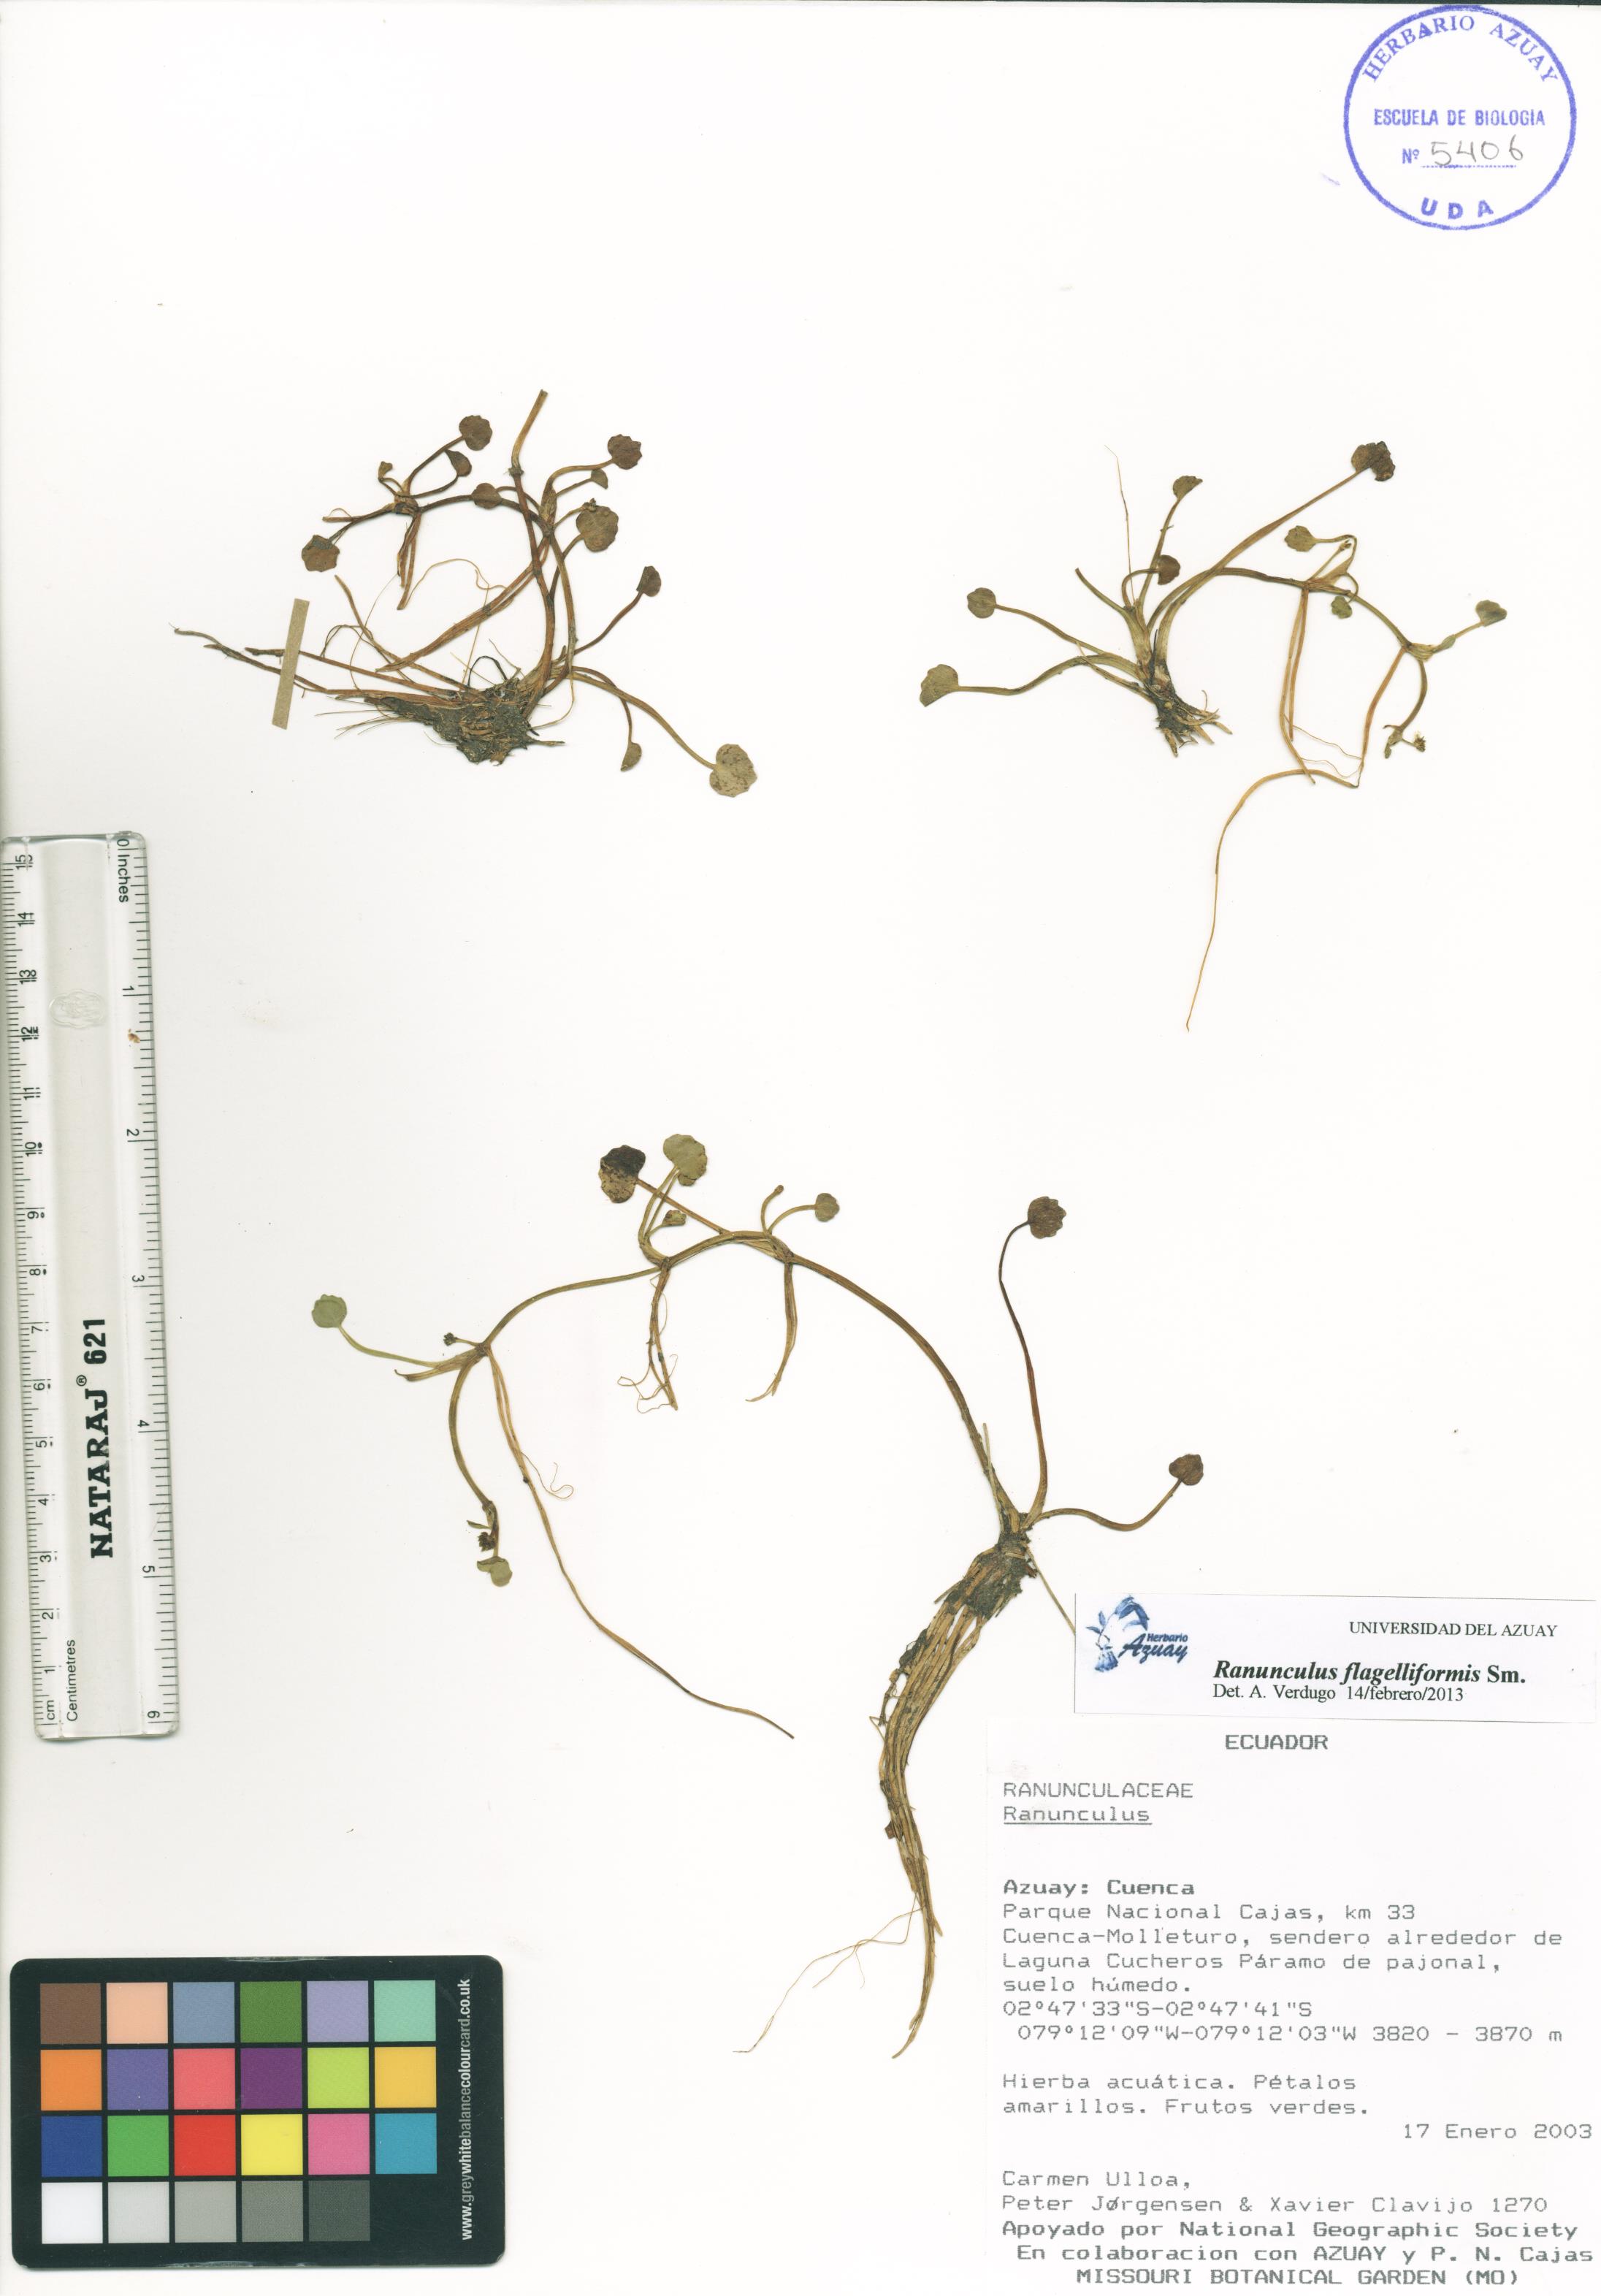 Ranunculus flagelliformis Sm.